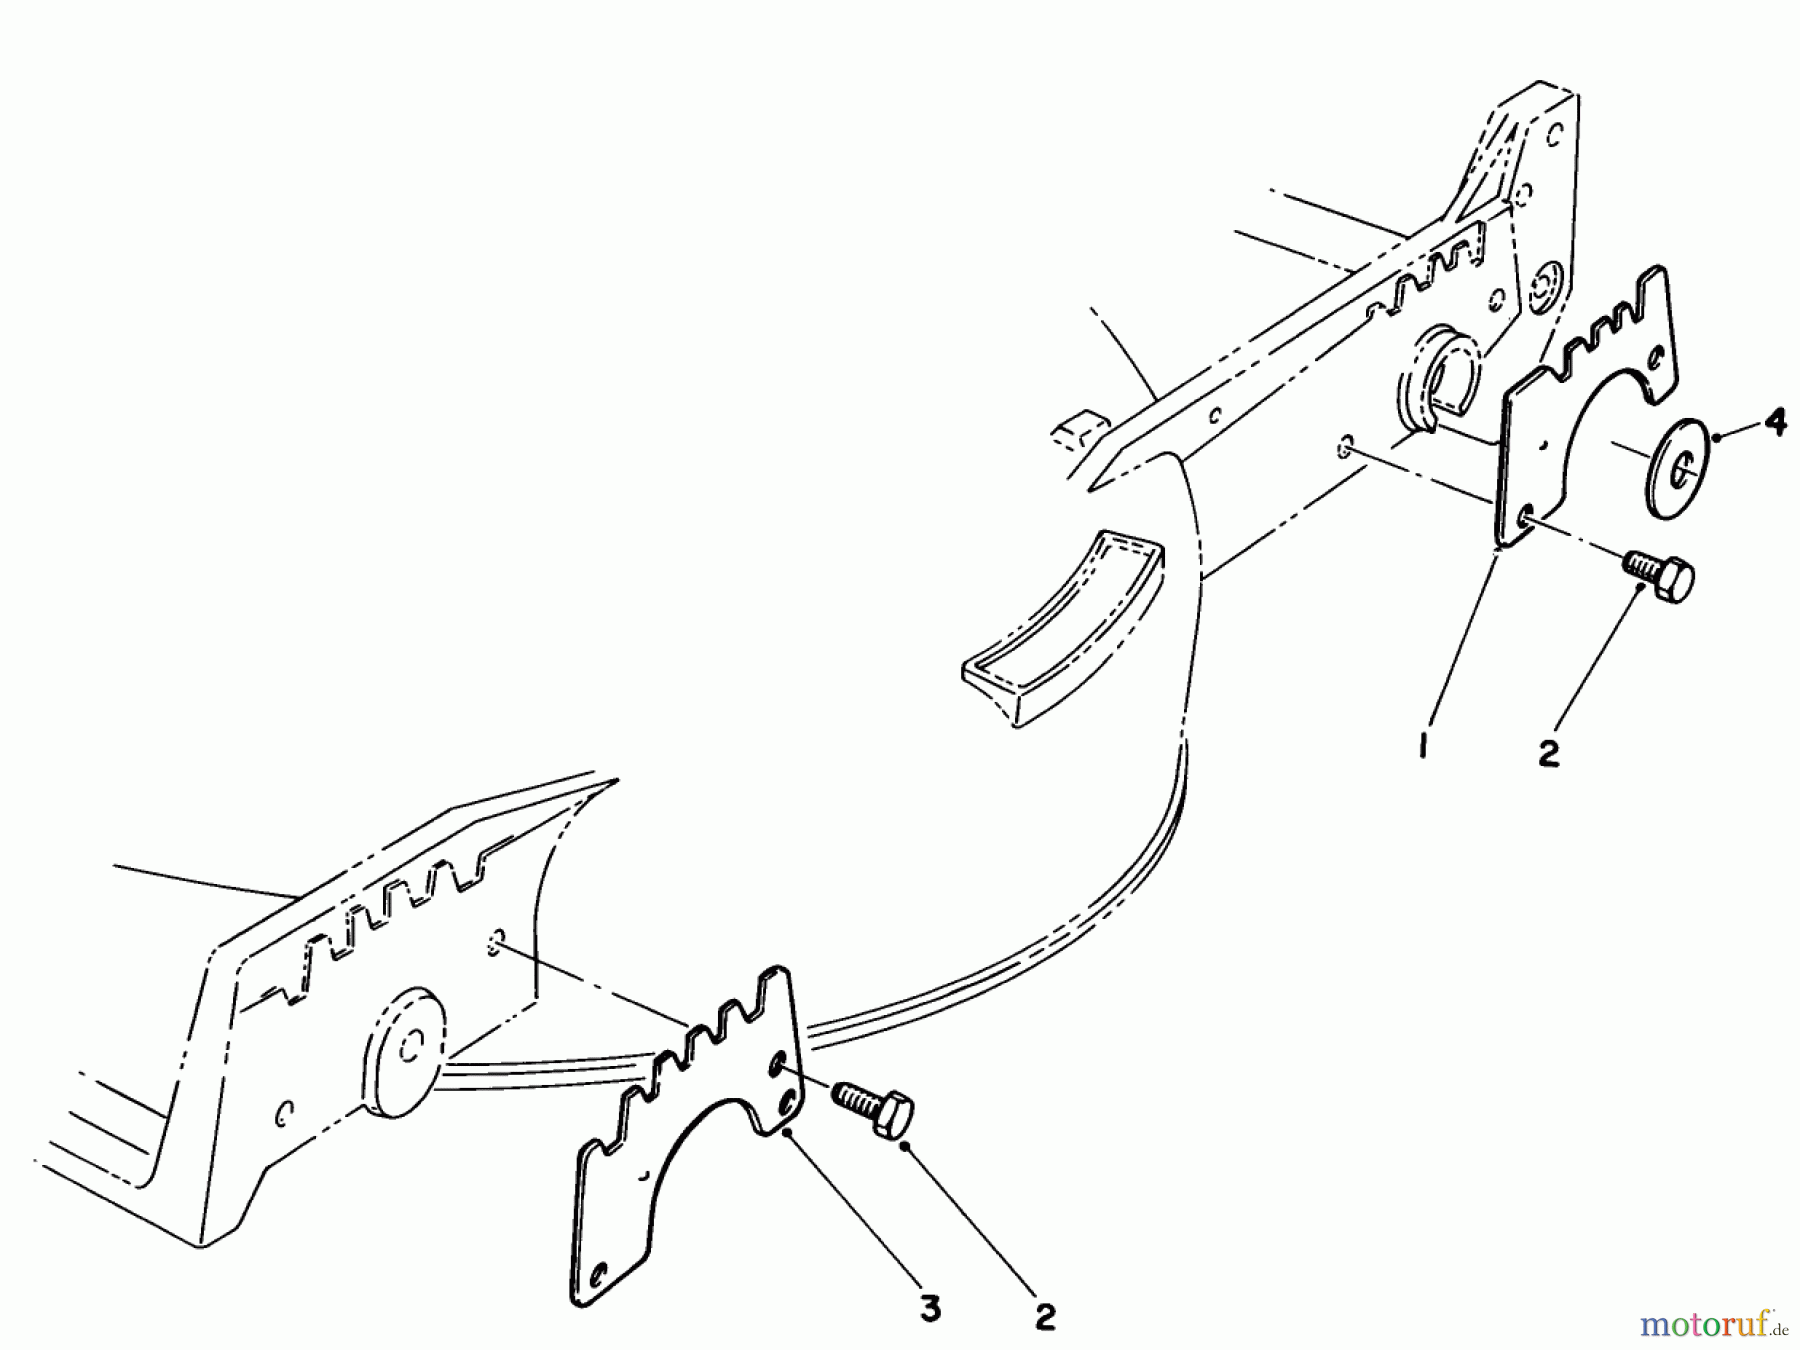  Toro Neu Mowers, Walk-Behind Seite 1 20610 - Toro Lawnmower, 1984 (4000001-4999999) WEAR PLATE KIT NO. 49-4080 (OPTIONAL)